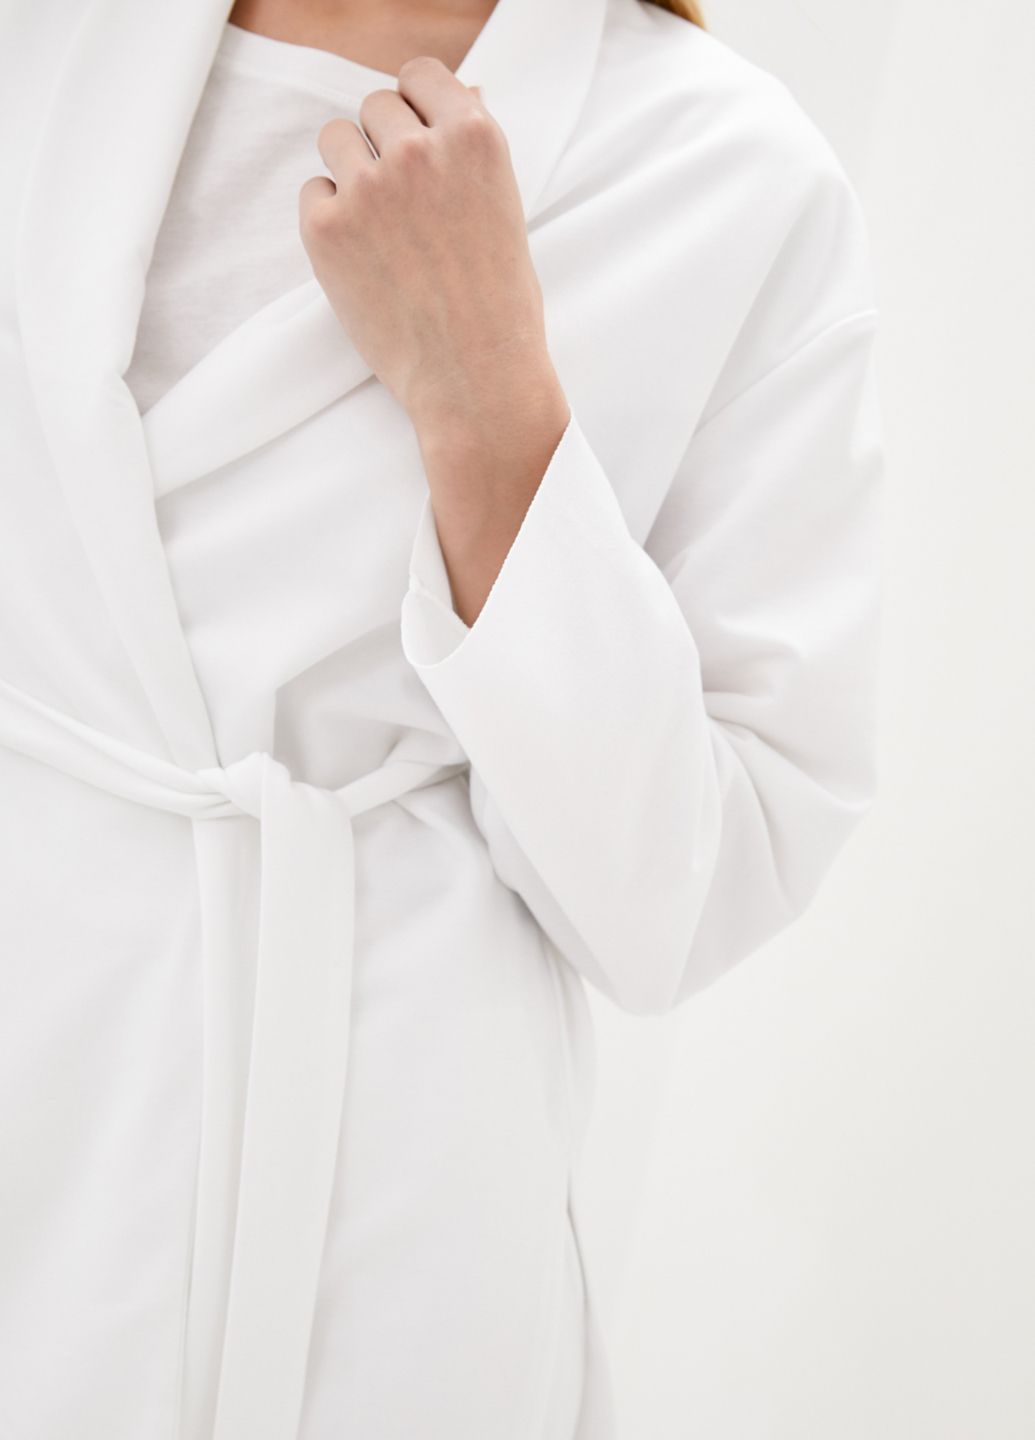 Купить Белый трикотажный женский жакет с поясом Merlini Монца 120000001, размер 42-44 в интернет-магазине